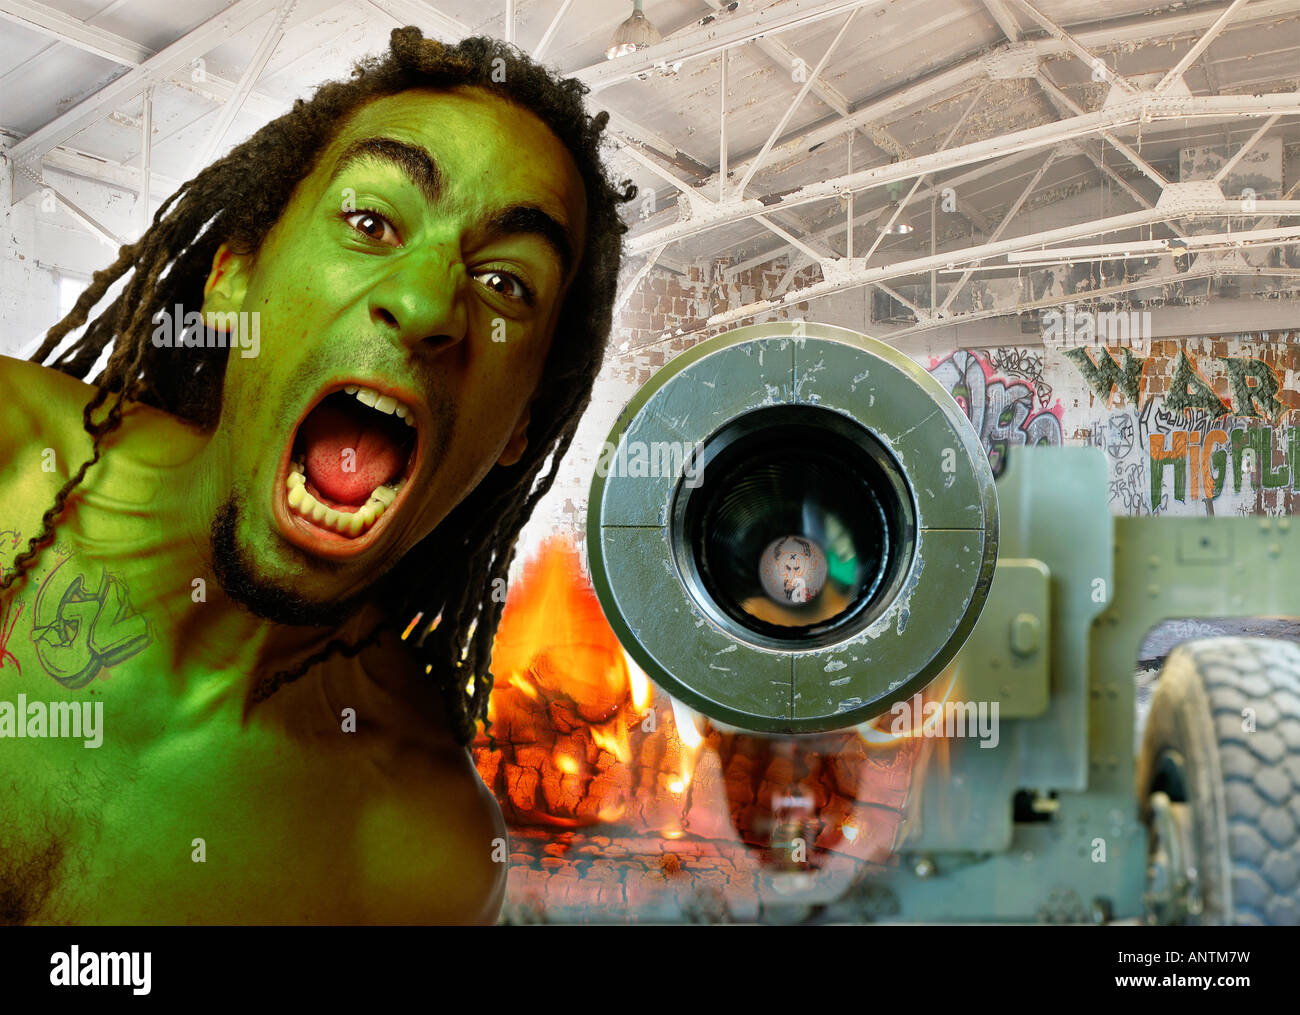 Grün gehäutet dämonischen Mann mit Dreadlocks schreien Feuer neben Kanone Lauf und Krieg Graffiti in verlassenen hangar Stockfoto